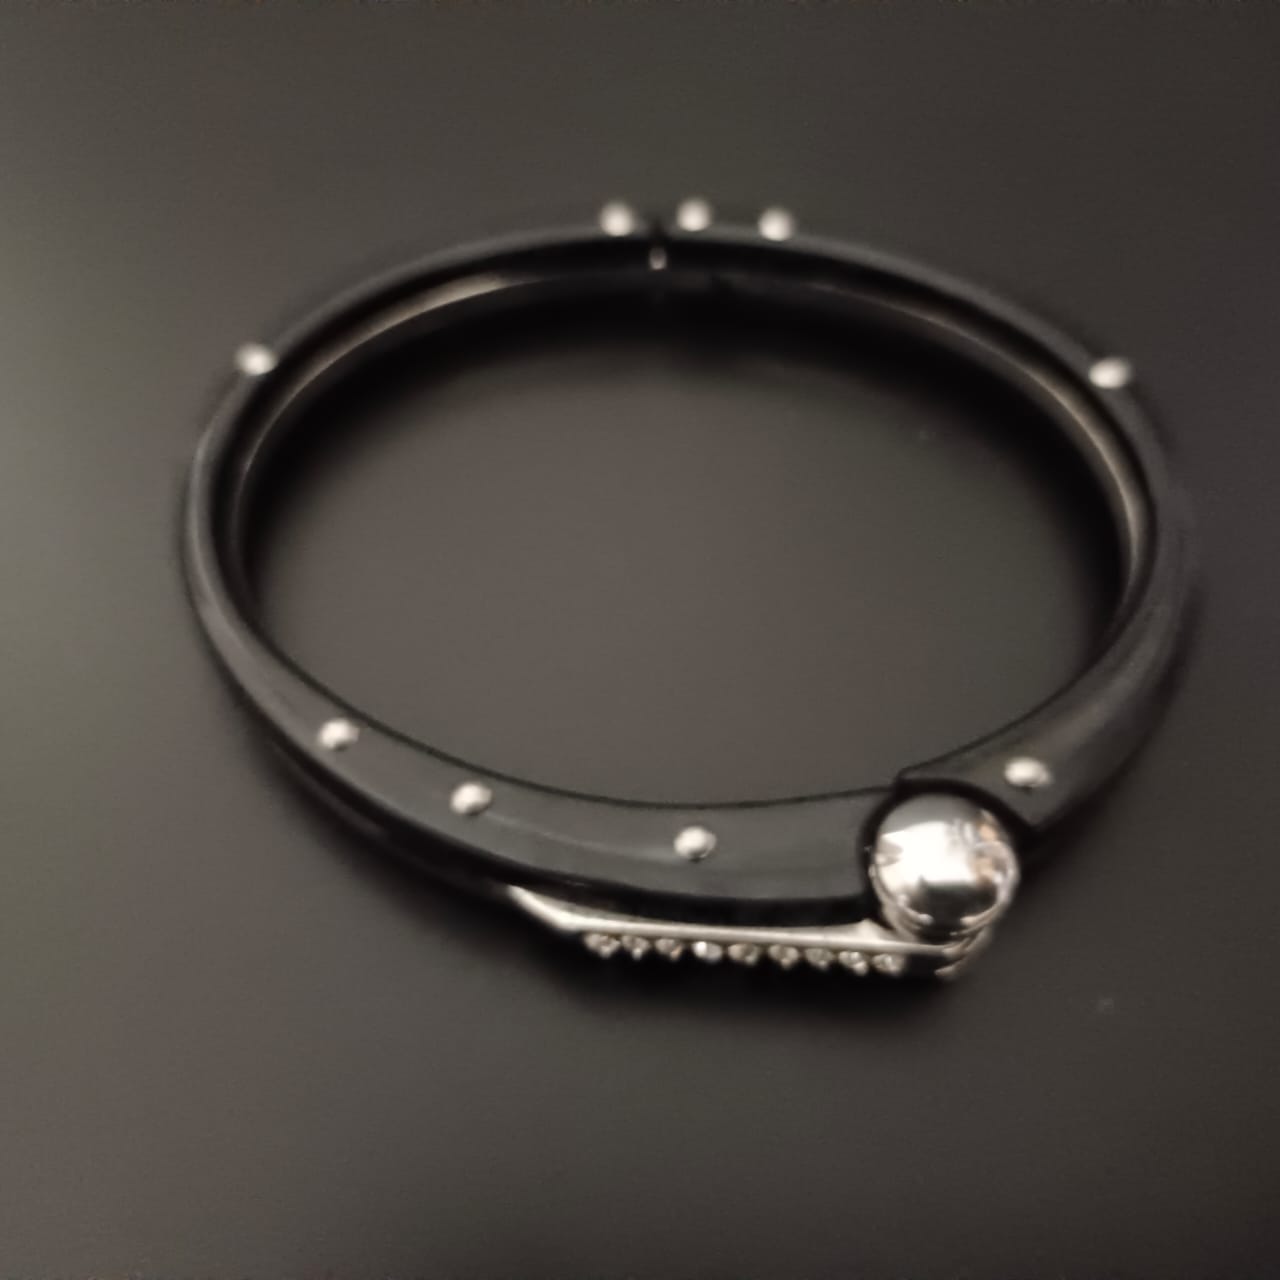 New Black Handcuff Bracelet For Men